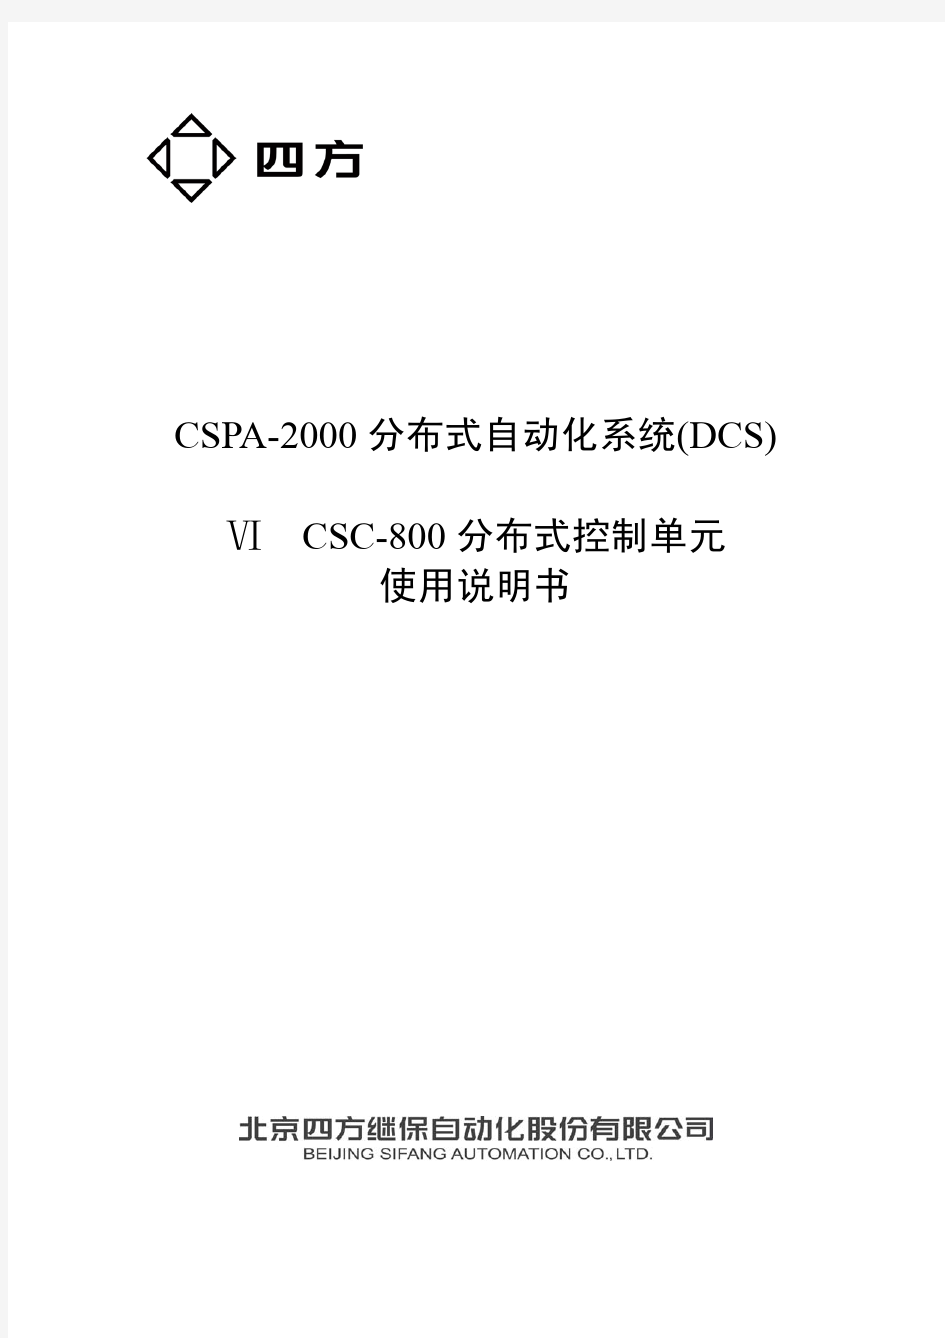 北京四方DCS系统硬件使用说明书_800S系列